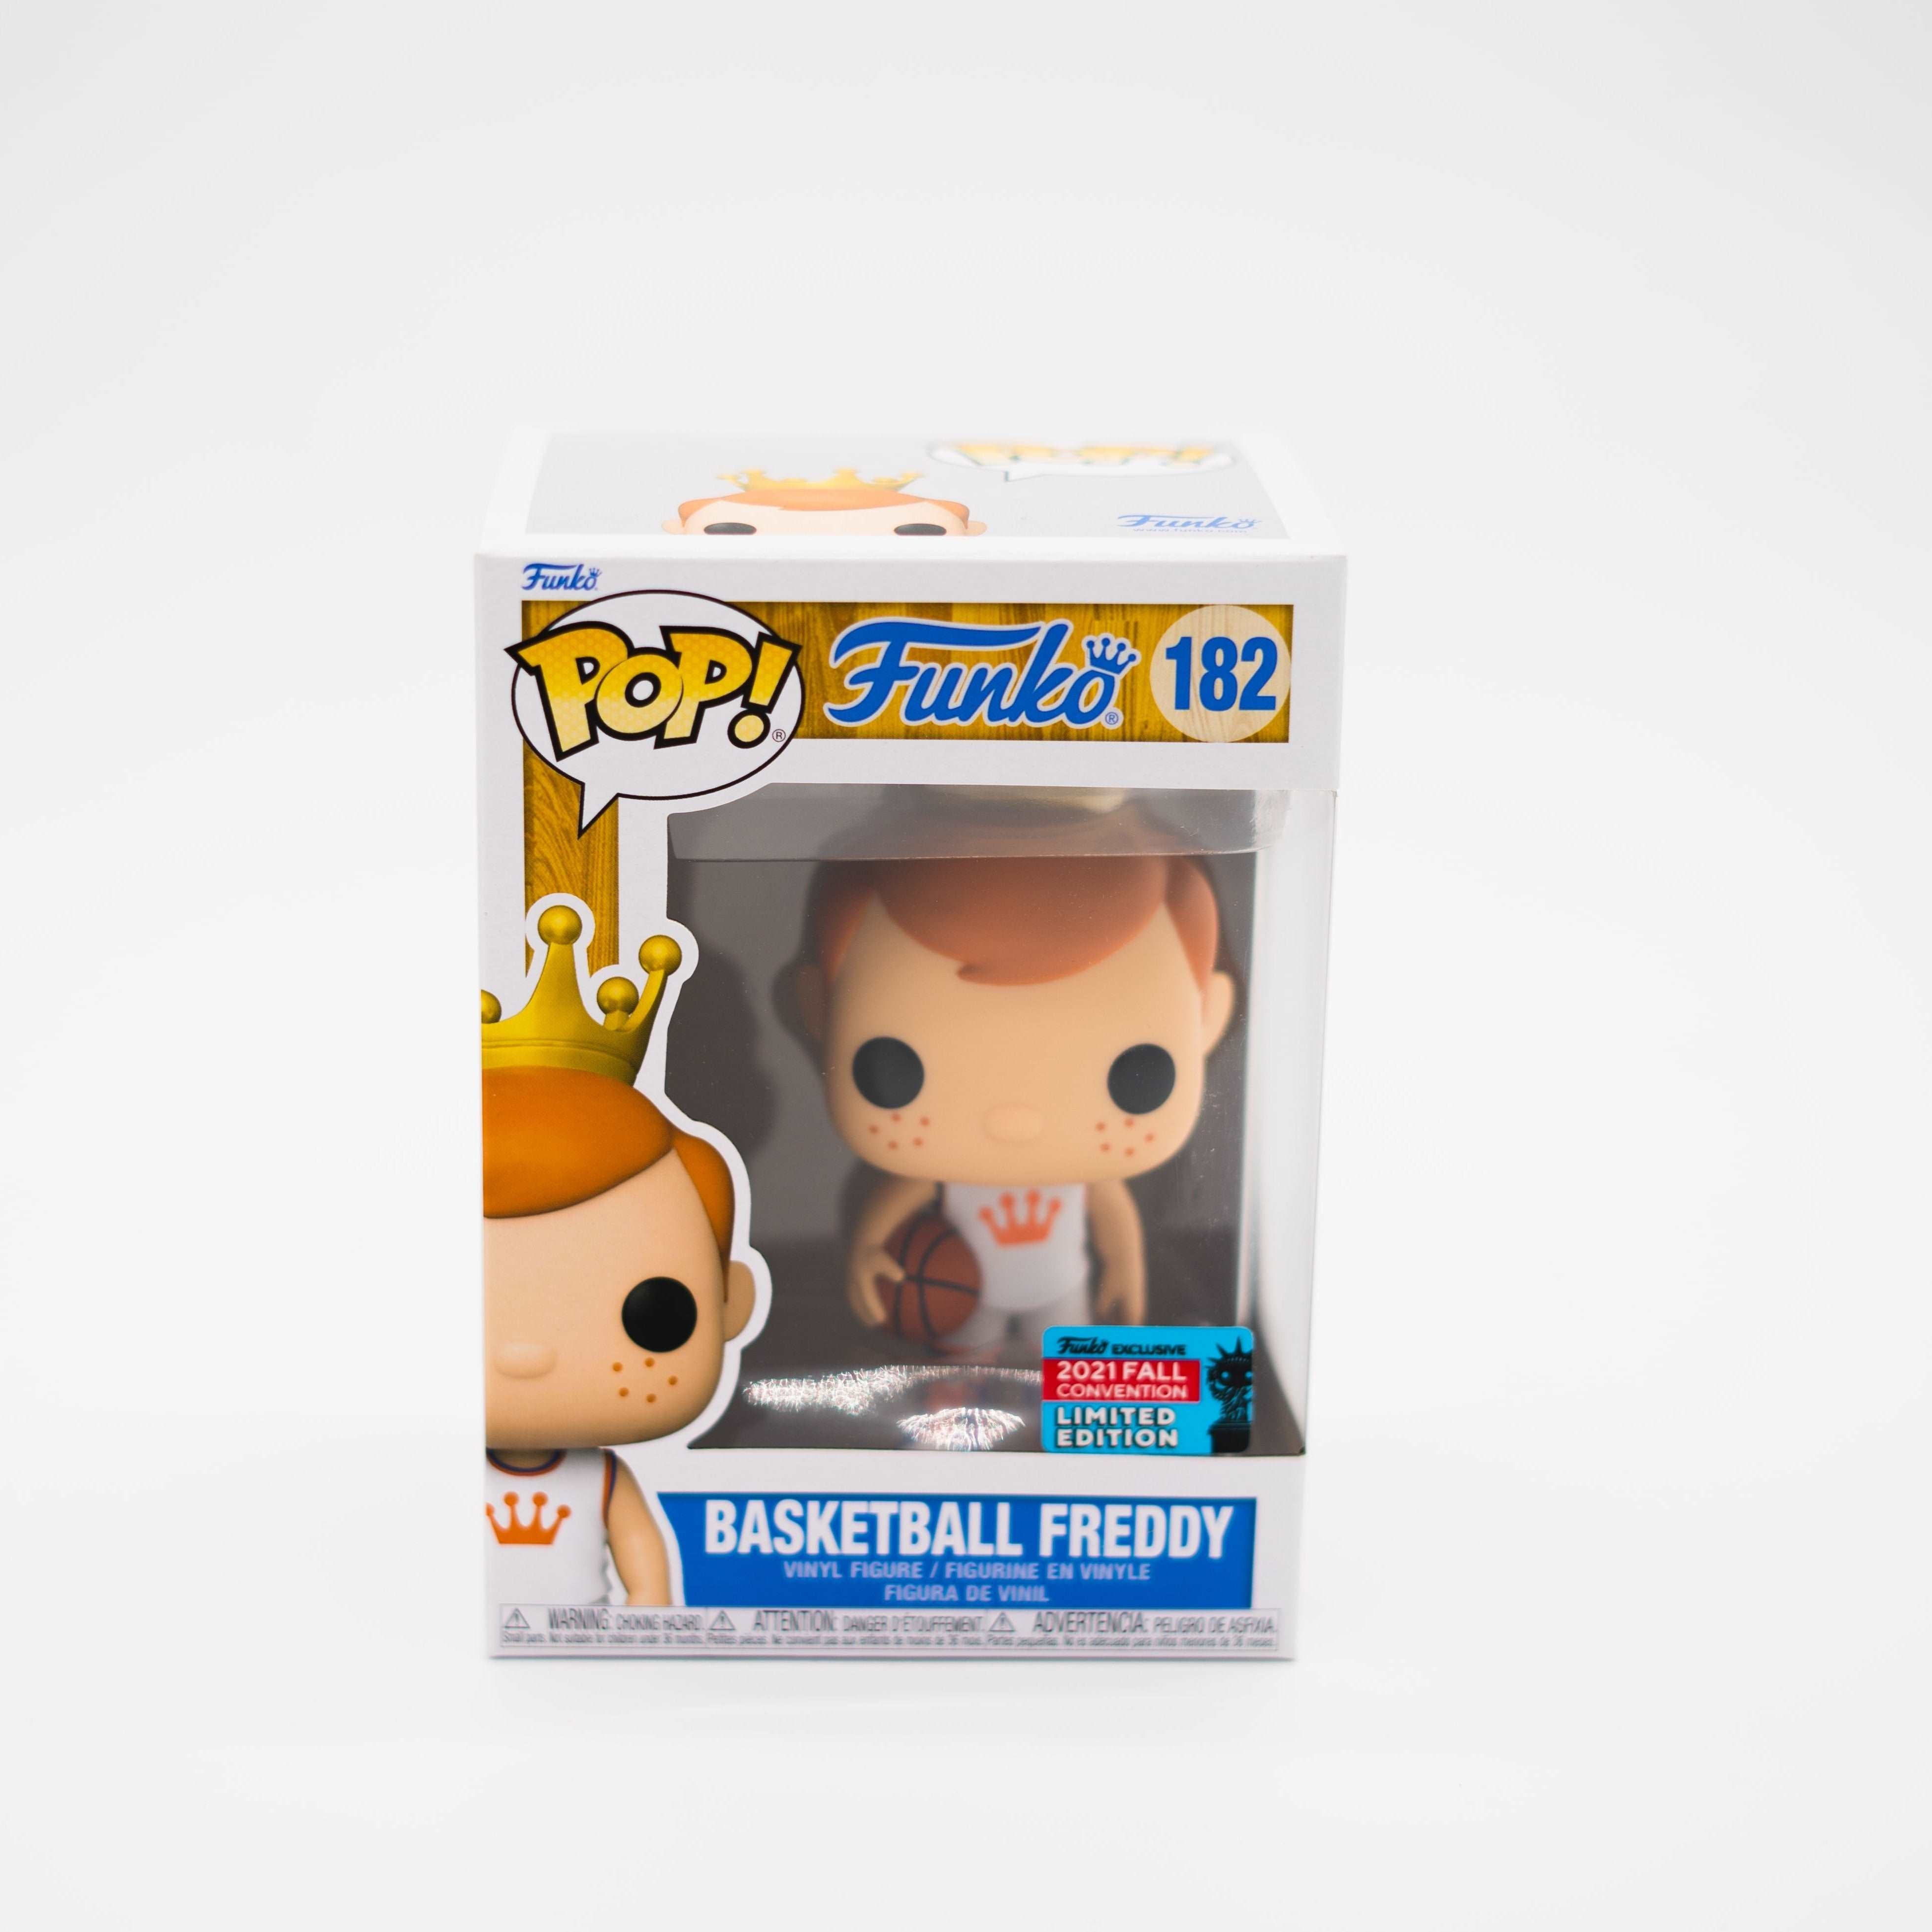 Funko Pop! Basketball Freddy #1822021 Fall Convention